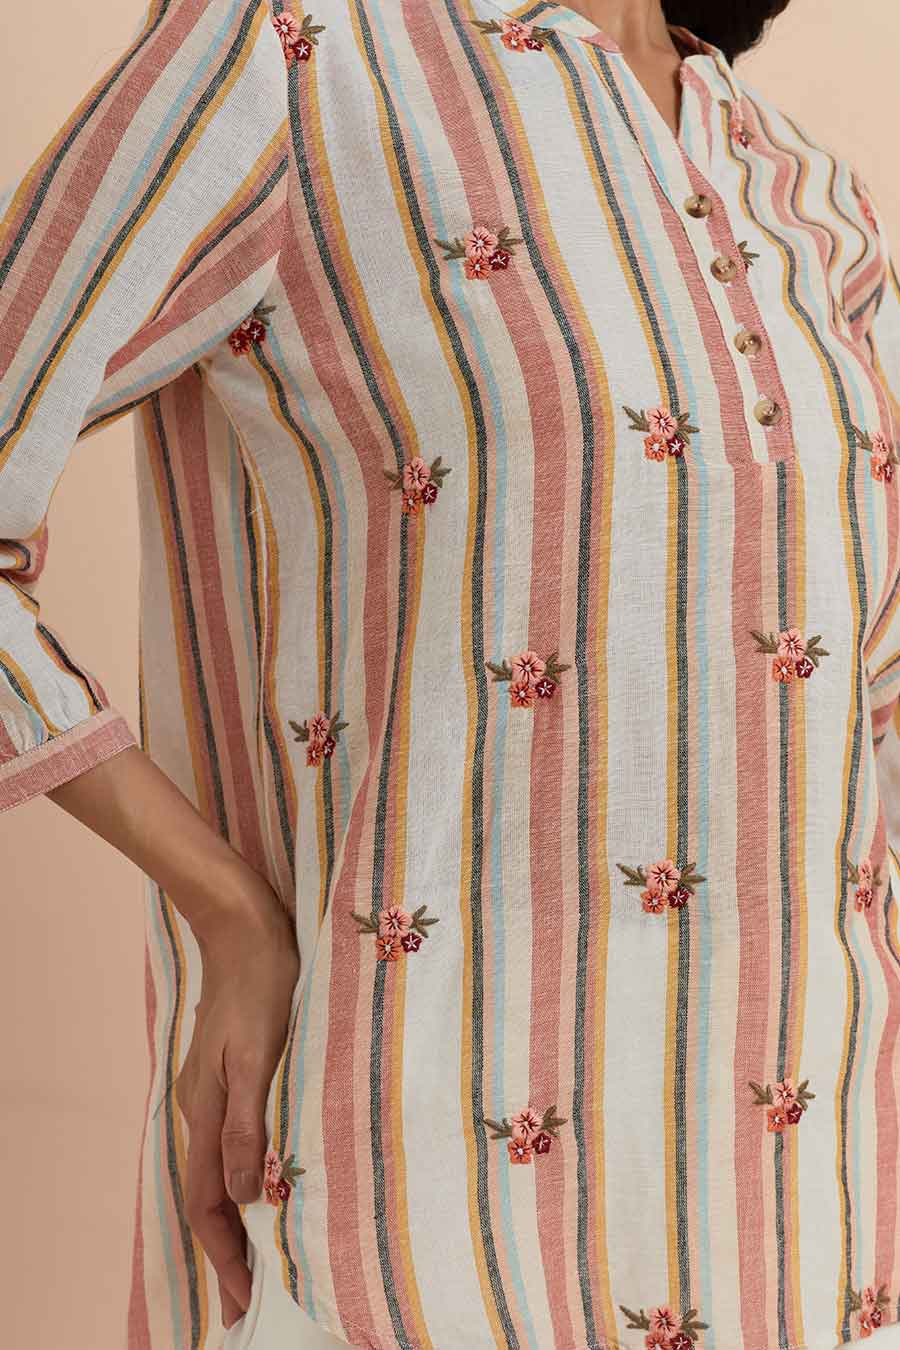 Multicolour Stripe Cotton Embroidered Top